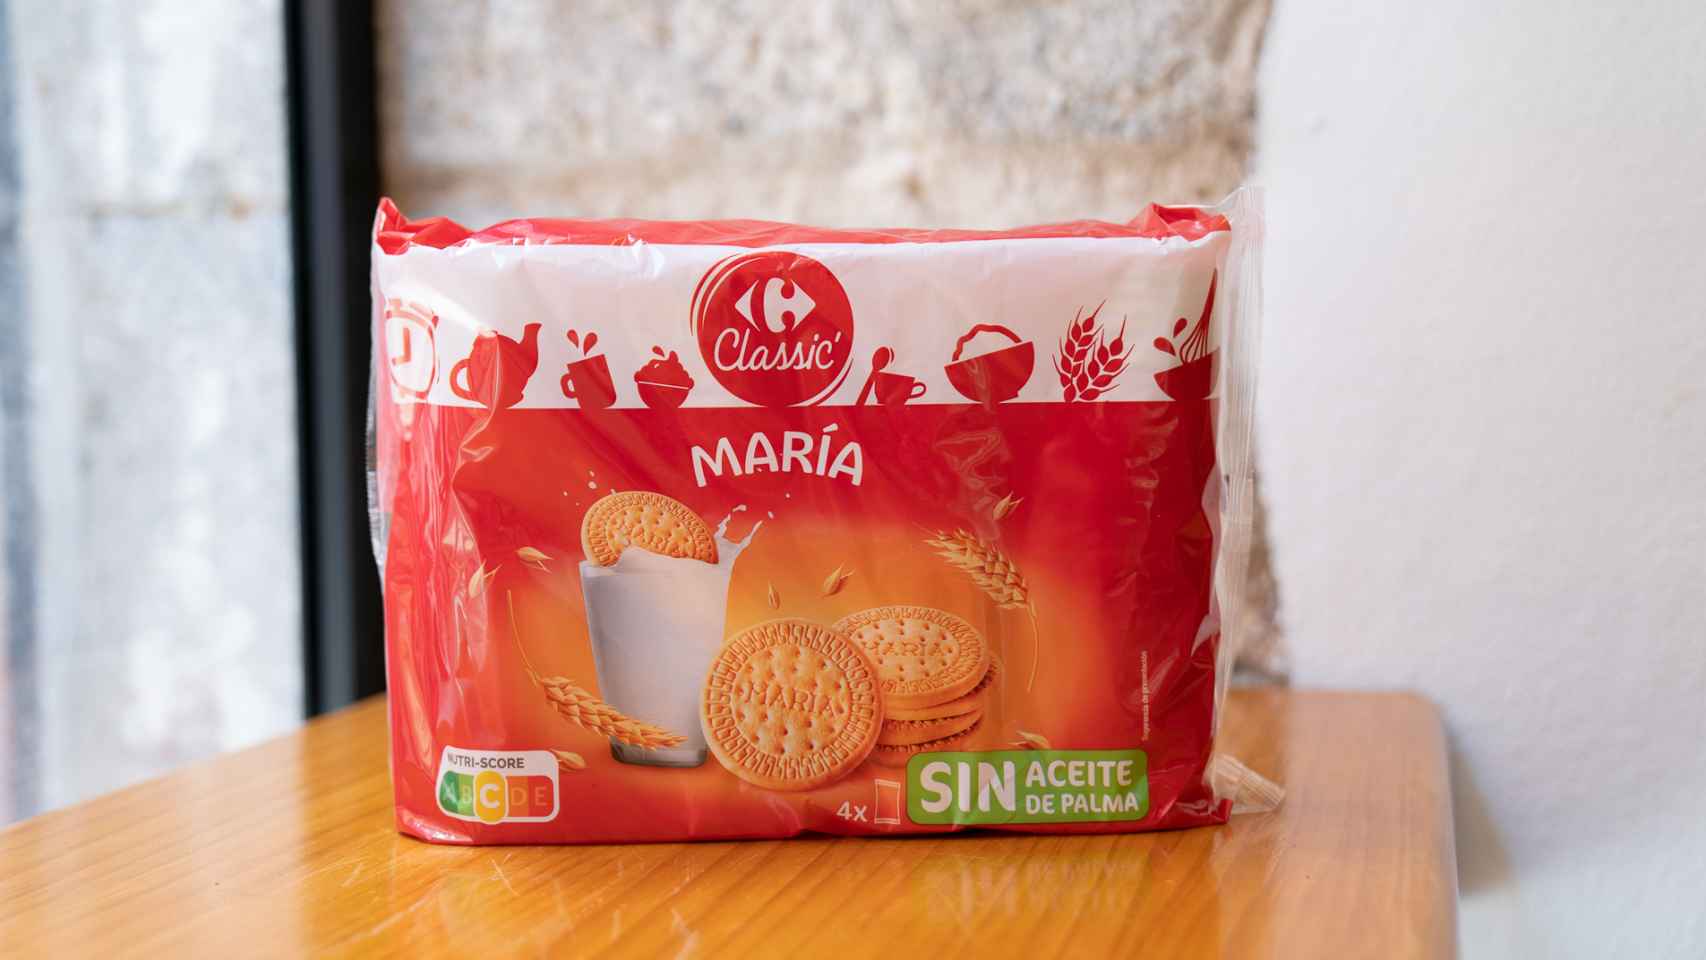 El paquete de galletas María de Carrefour.